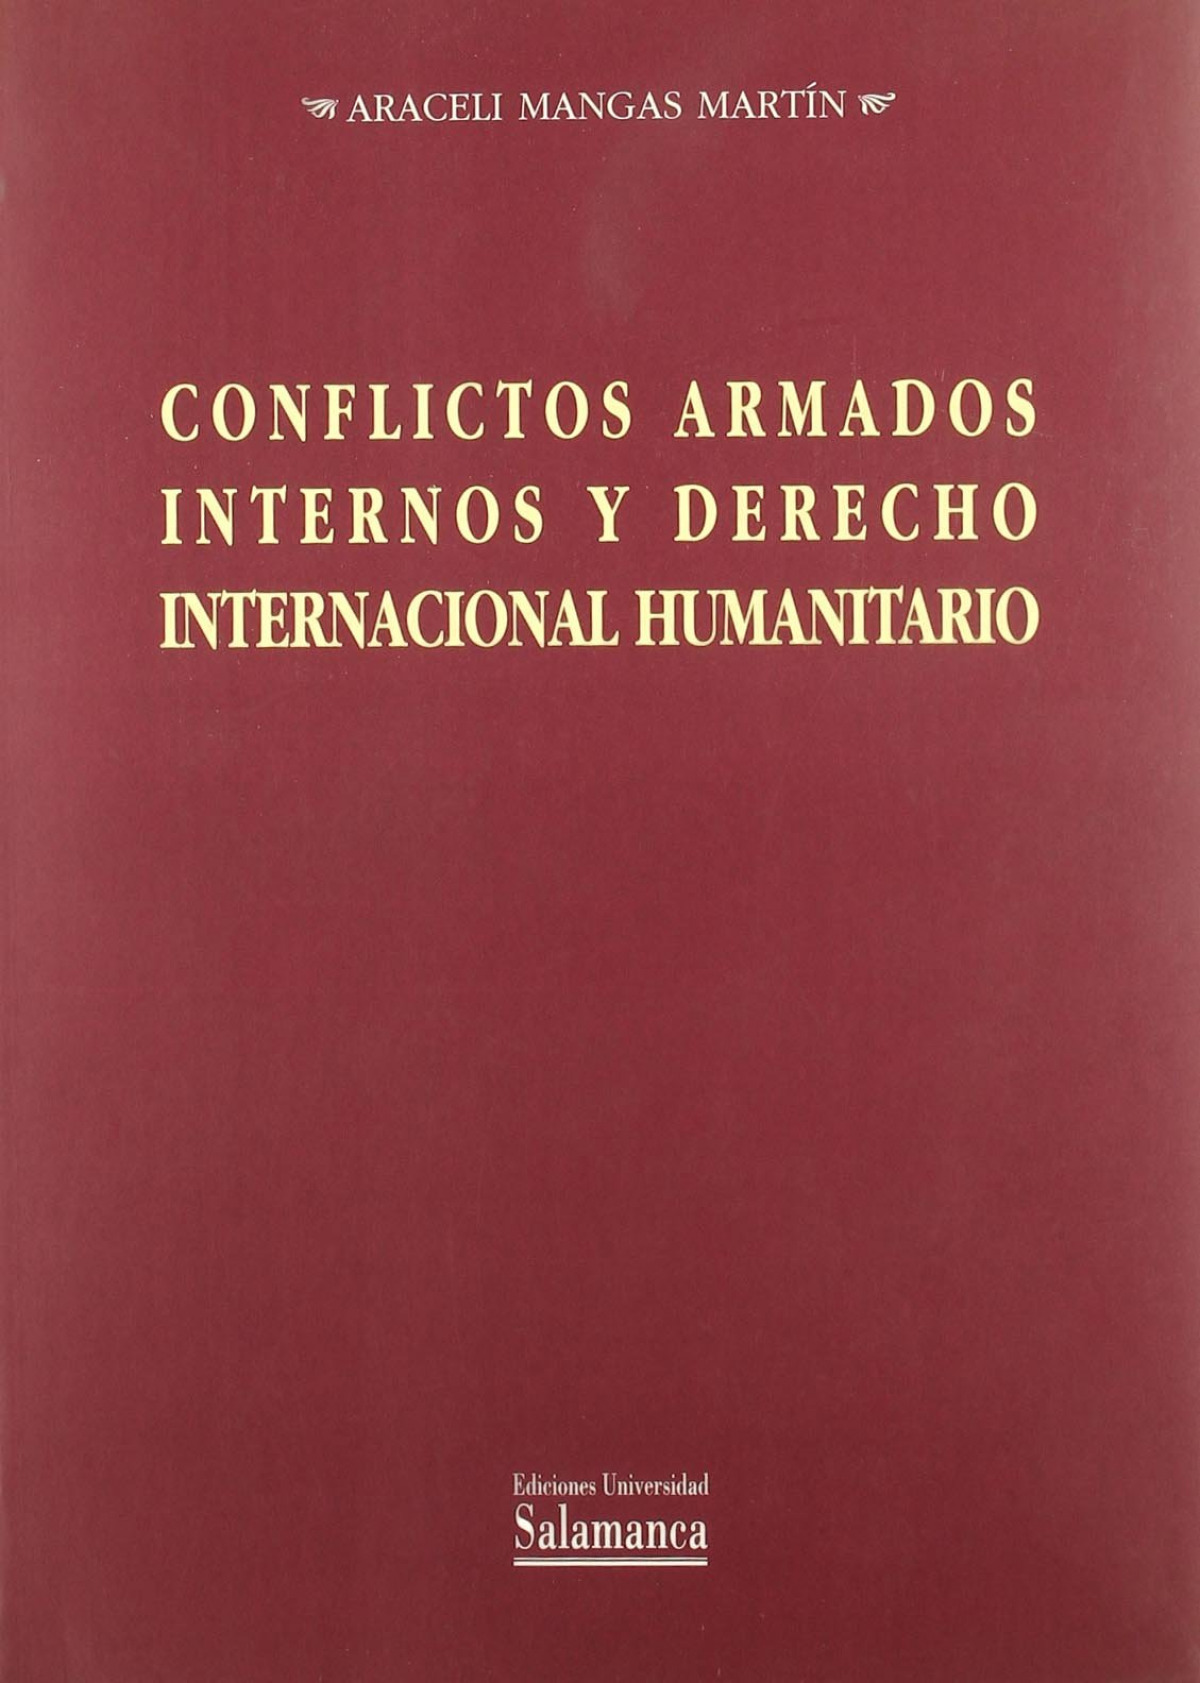 Conflictos armados internos y derecho internacional humanitario - Mangas Martín, Araceli